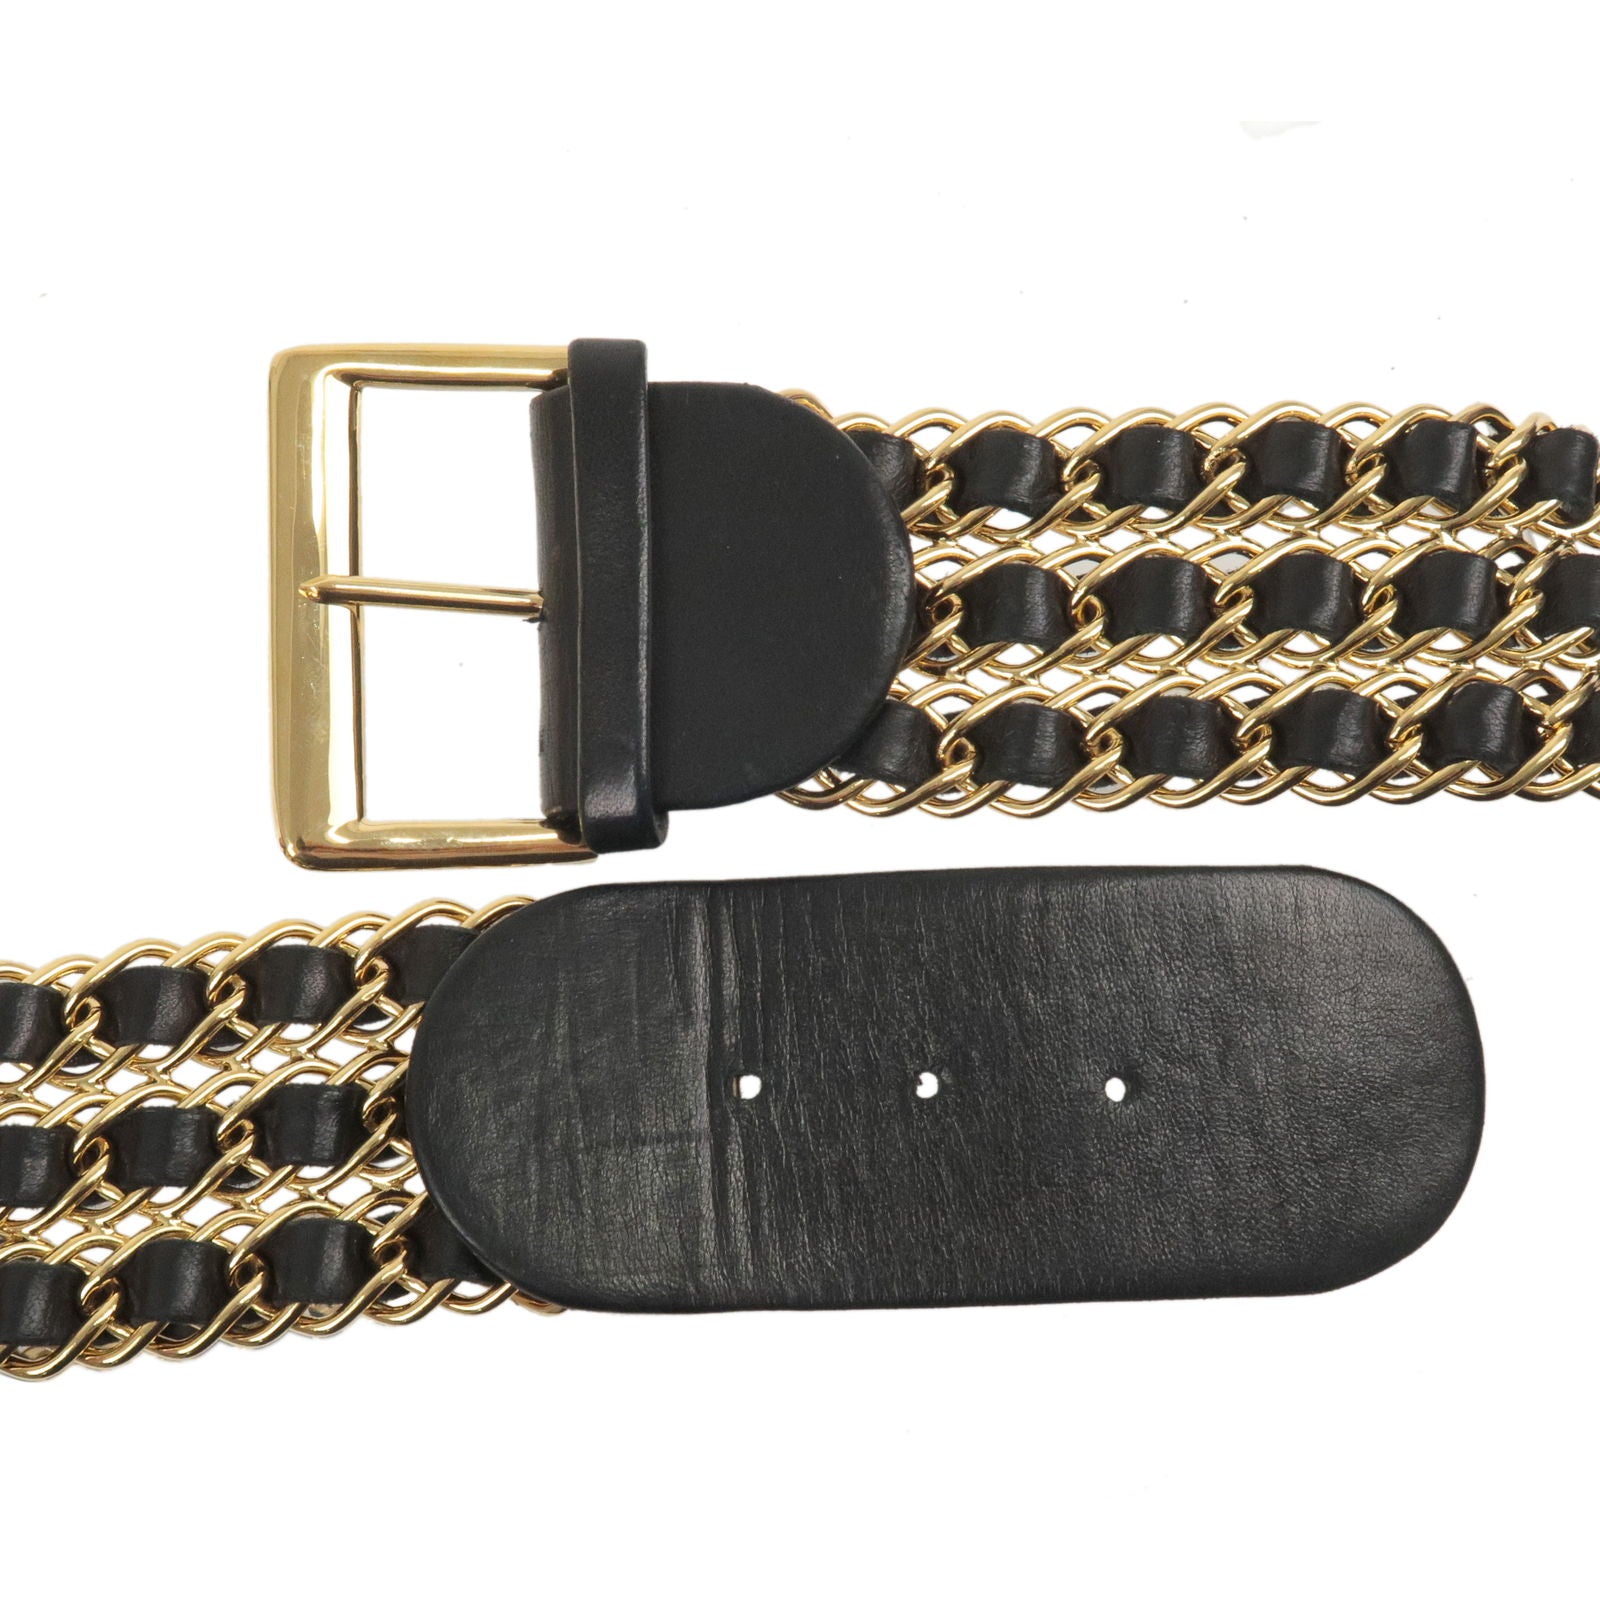 Chanel Vintage 5-Sunburst CC Choker Necklace Gold Plated – Boutique Patina